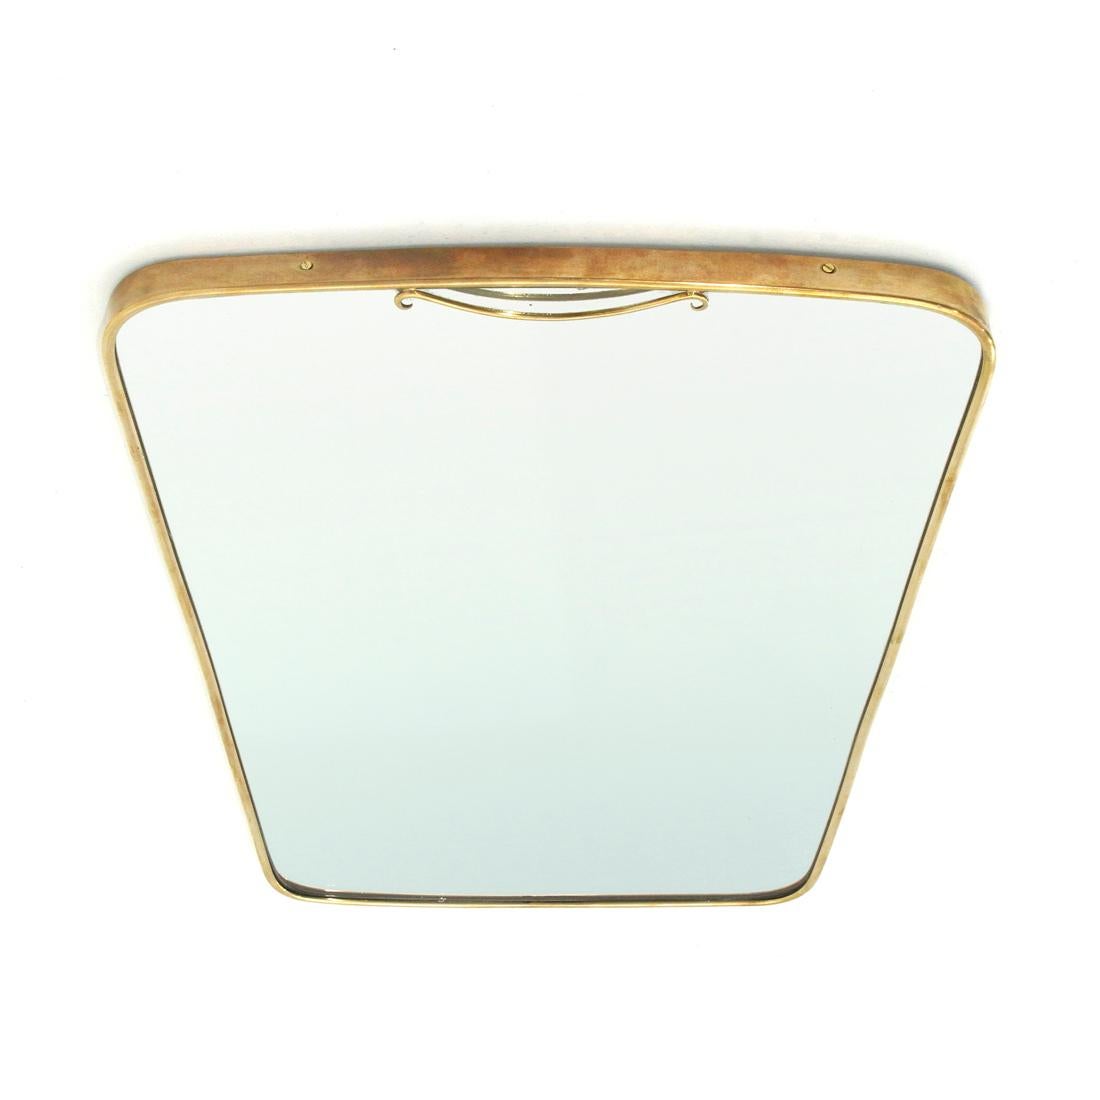 Mid-20th Century Italian Midcentury Brass Frame Mirror, 1950s